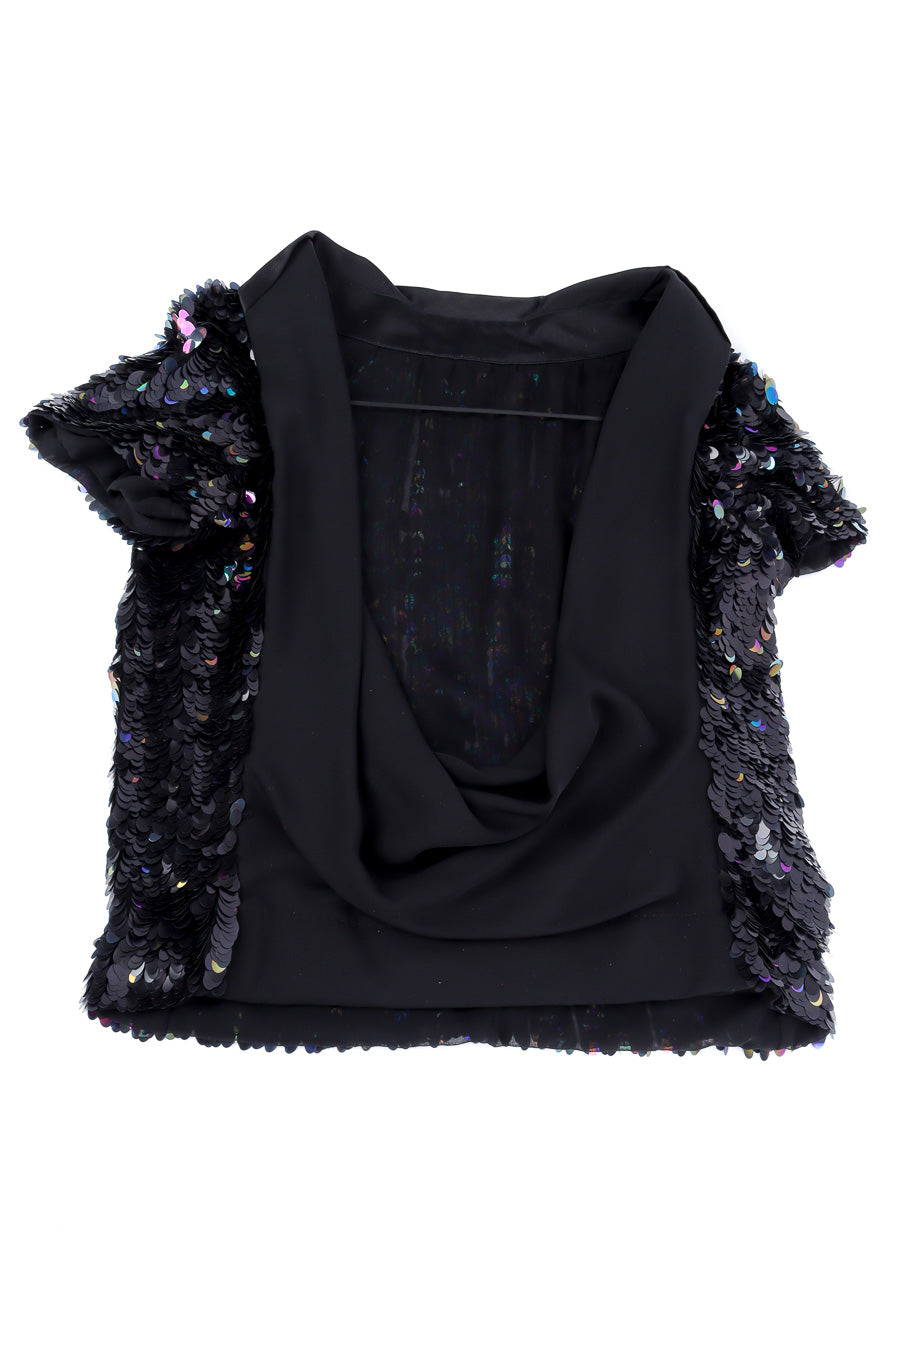 Louis Vuitton sequin blouse back flat-lay @recessla